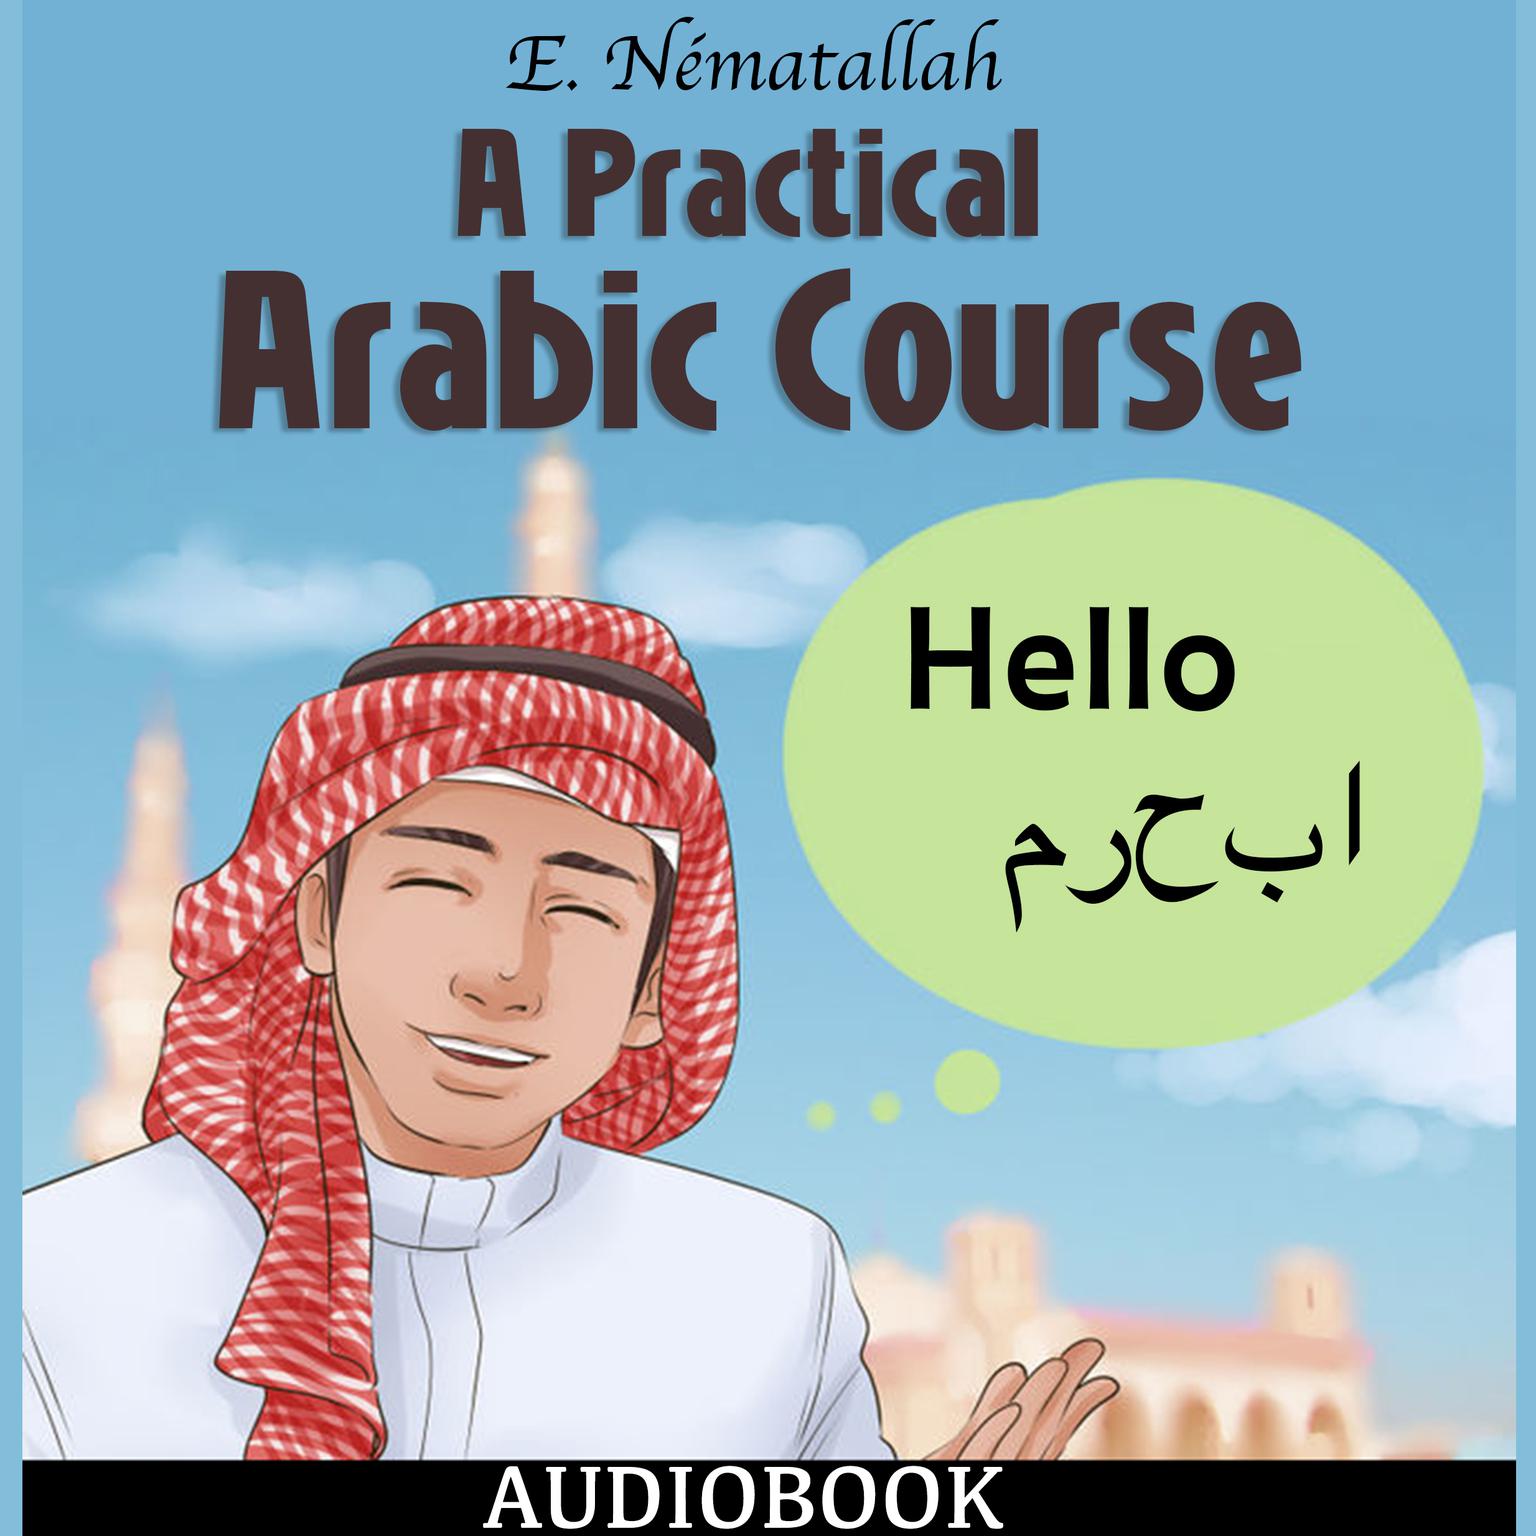 A Practical Arabic Course Audiobook, by E. Nématallah